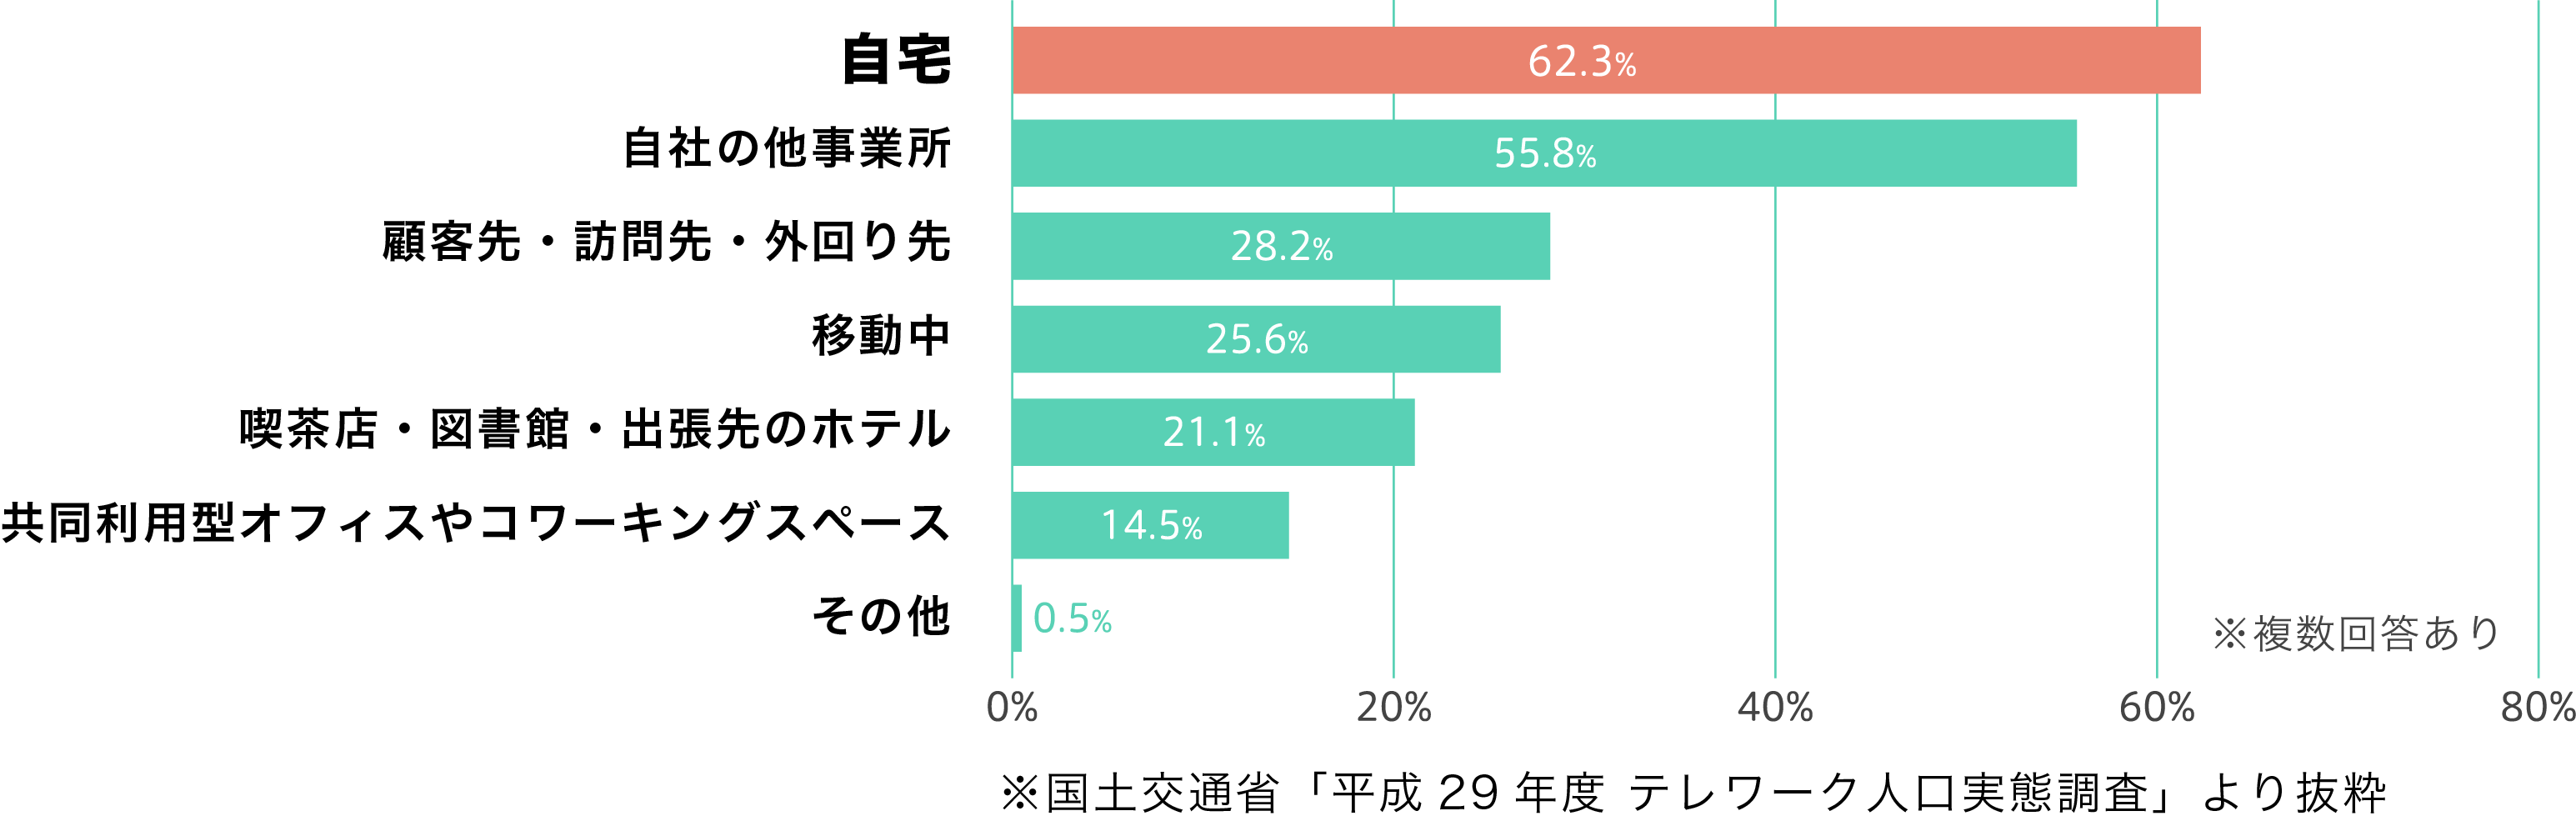 自宅62.3% ※国土交通省「平成29年度 テレワーク人口実態調査」より抜粋